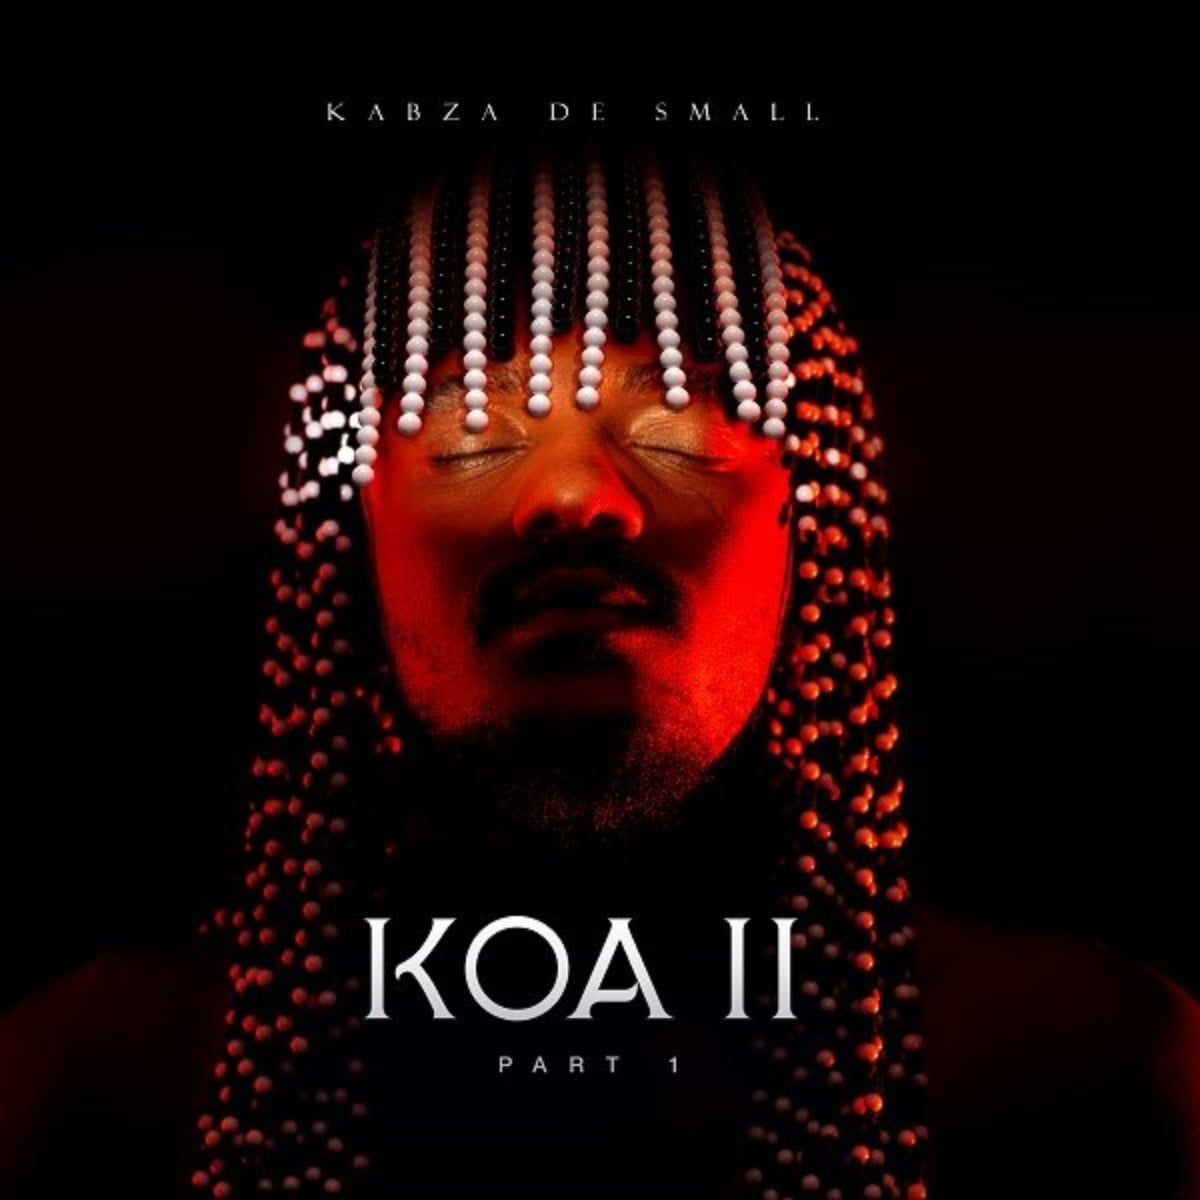 Kabza De Small KOA 2 Album (Part 1) ZIP & MP3 Download